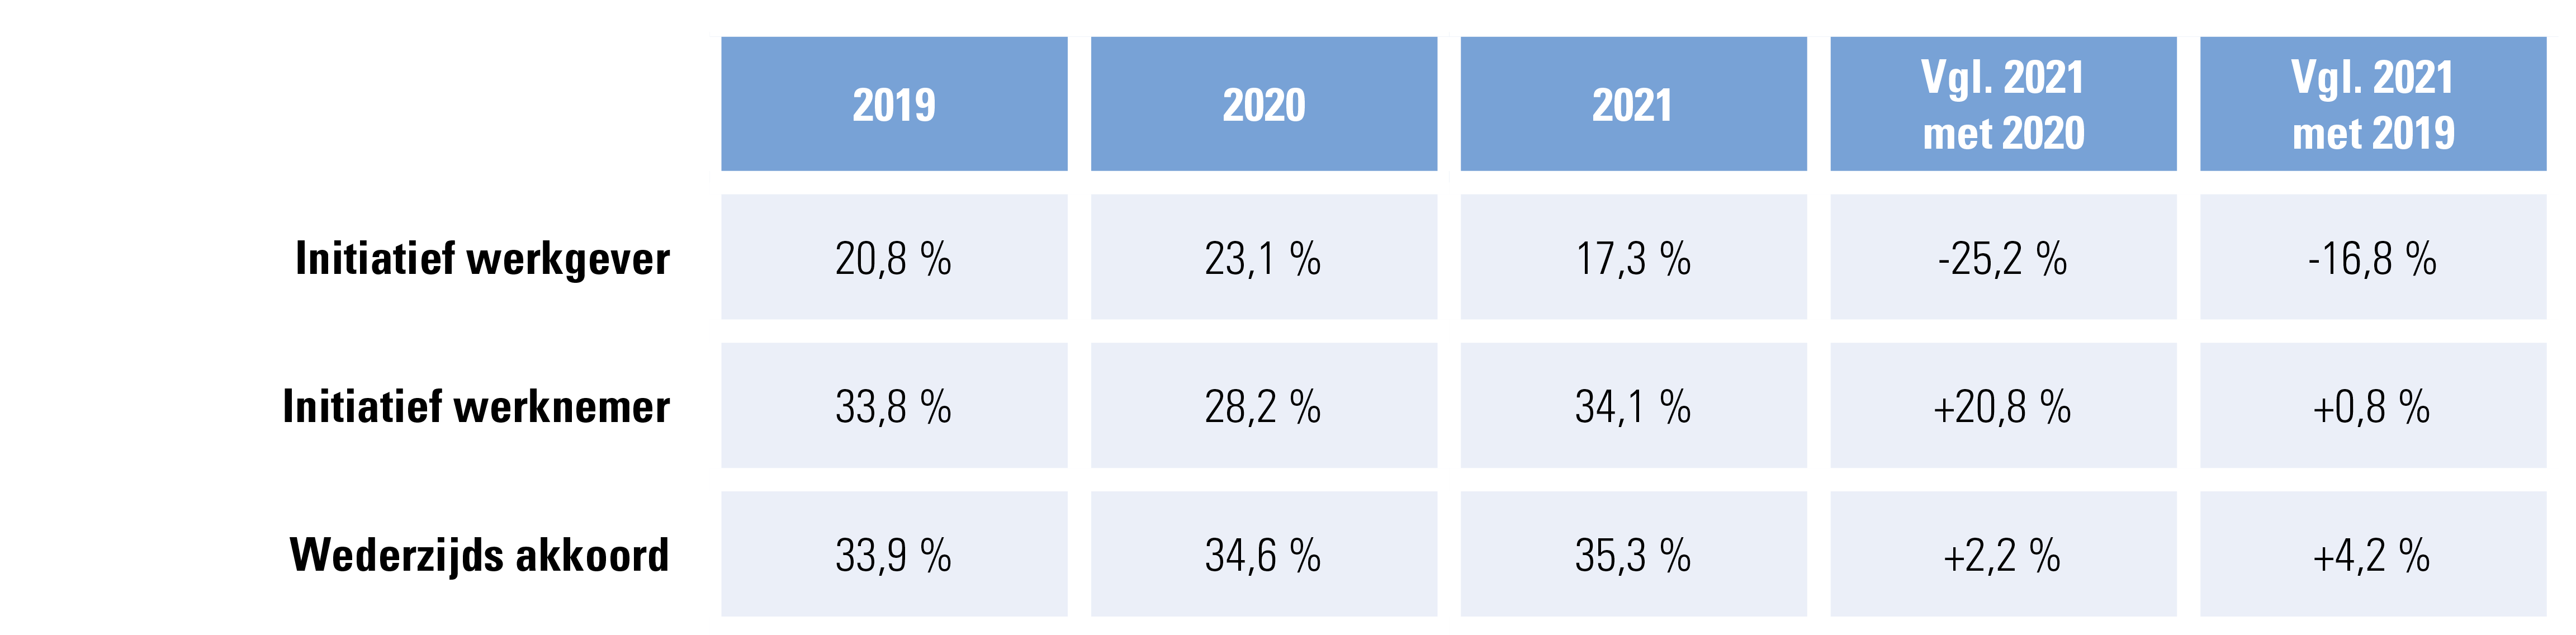 Contracten onbepaalde duur, evolutie: 2021 vergeleken met 2020 en met 2019